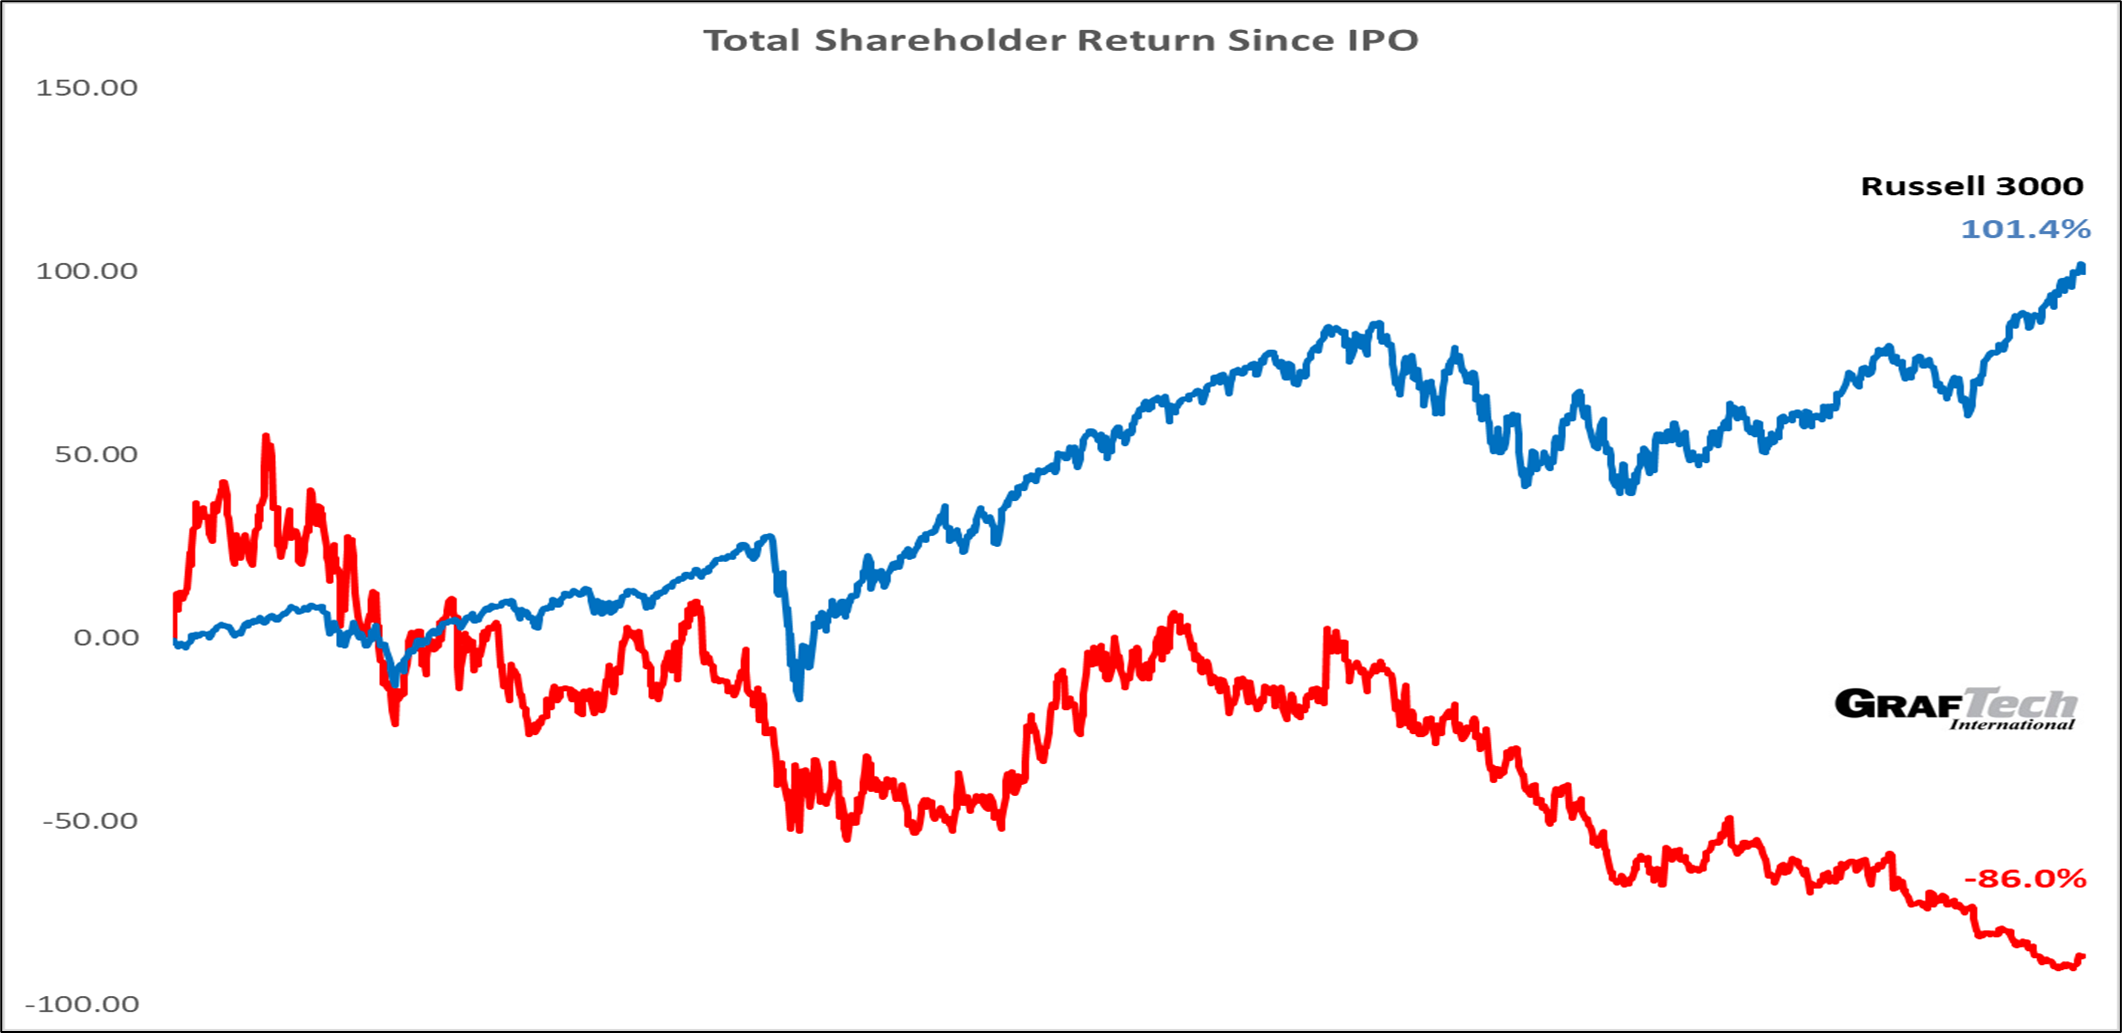 Total Shareholder Return Since IPO